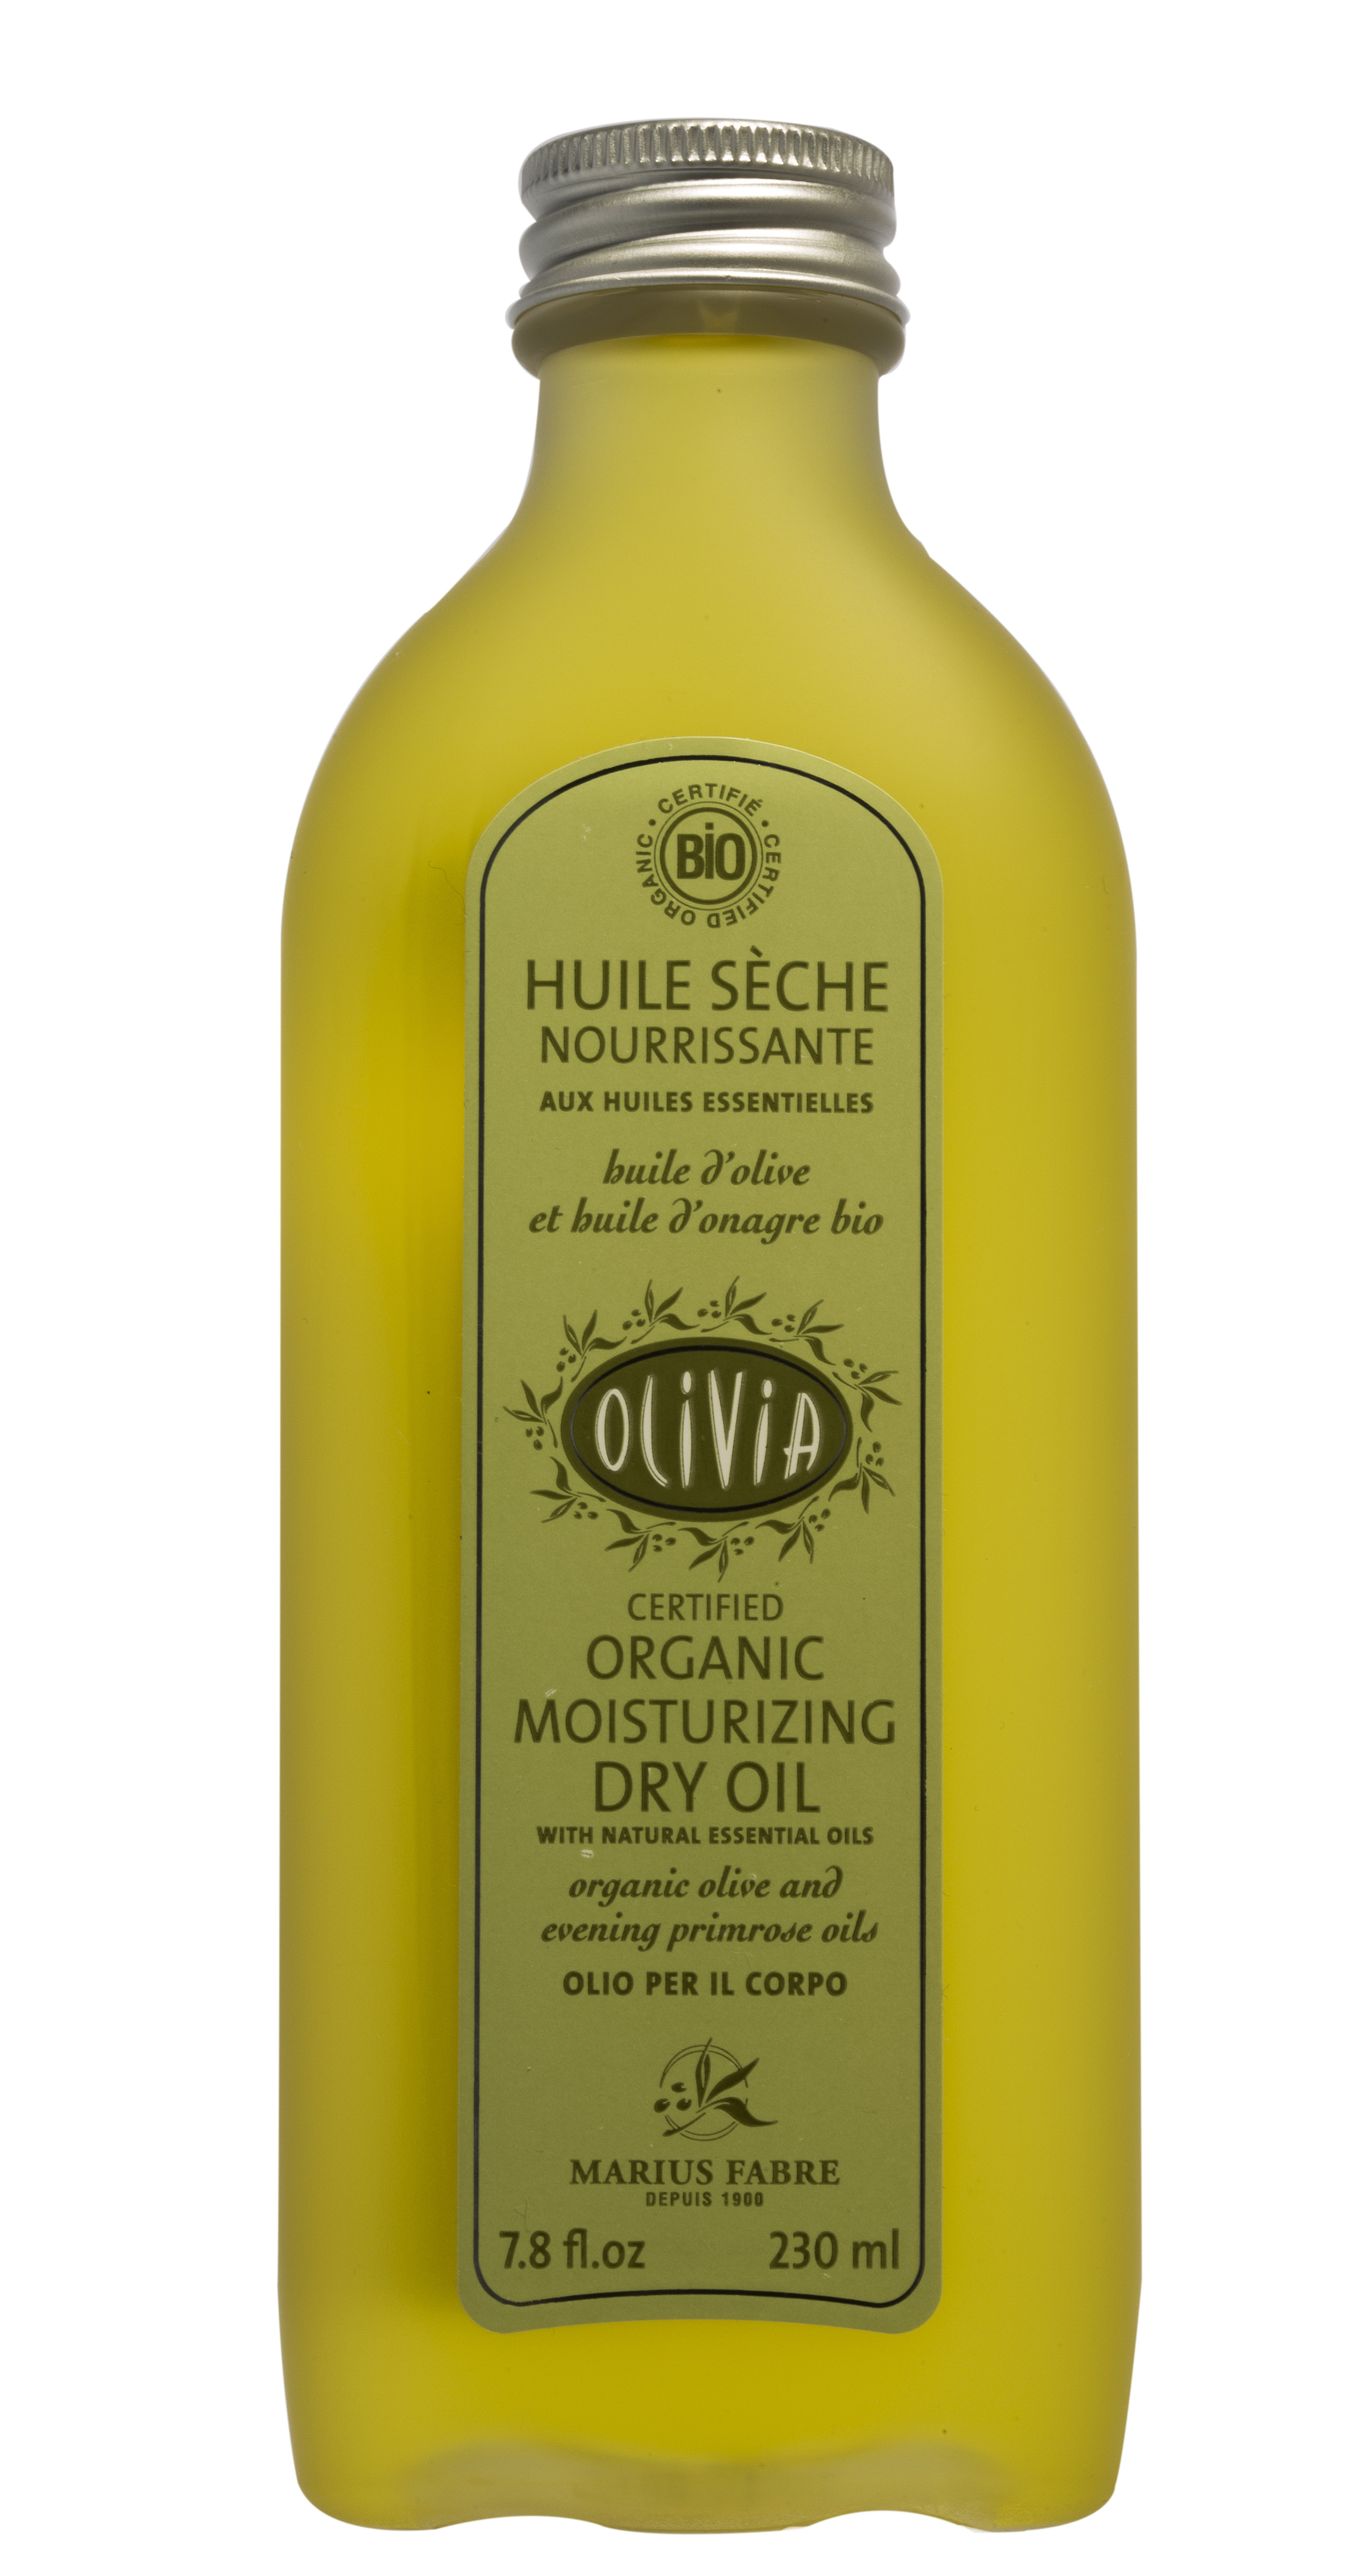 Huile sèche BIO à l'huile d'olive & huile d'onagre, 230ml